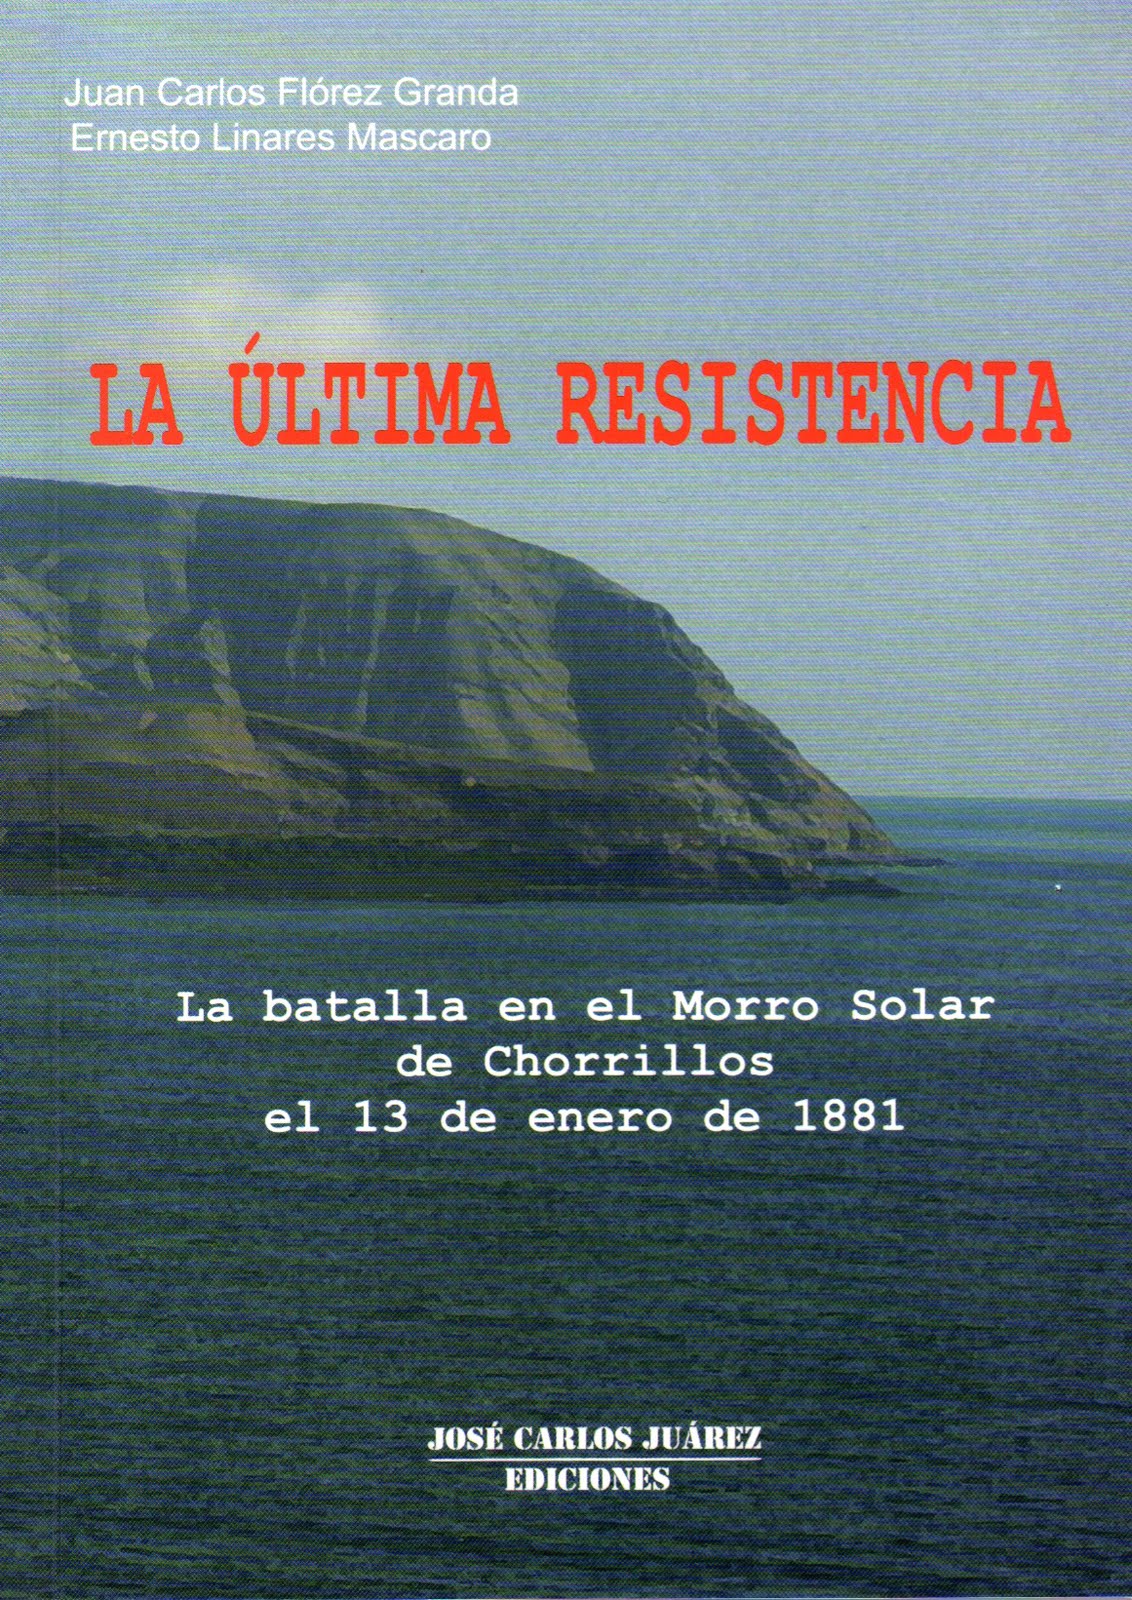 Presentación de libro: "La última resistencia"